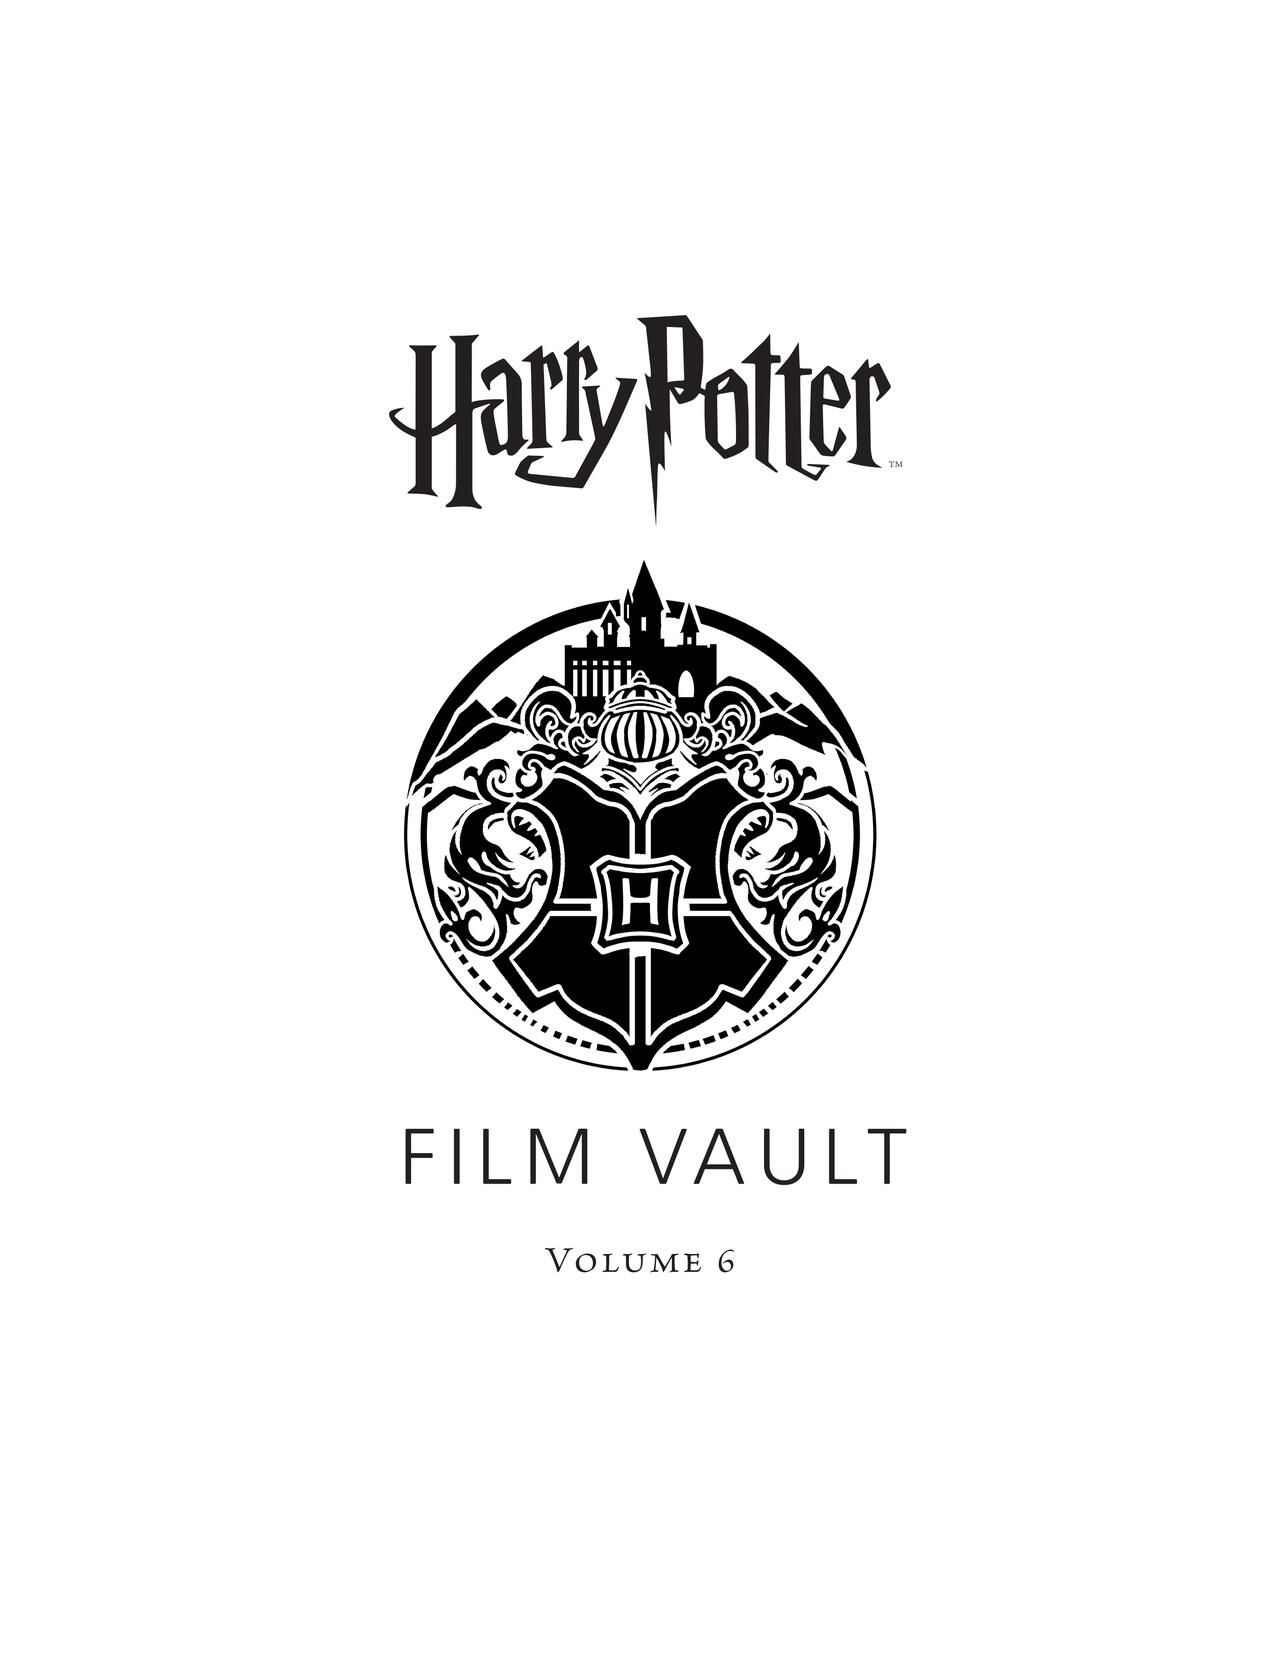 Harry Potter - Film Vault v06 - Hogwarts Castle 3